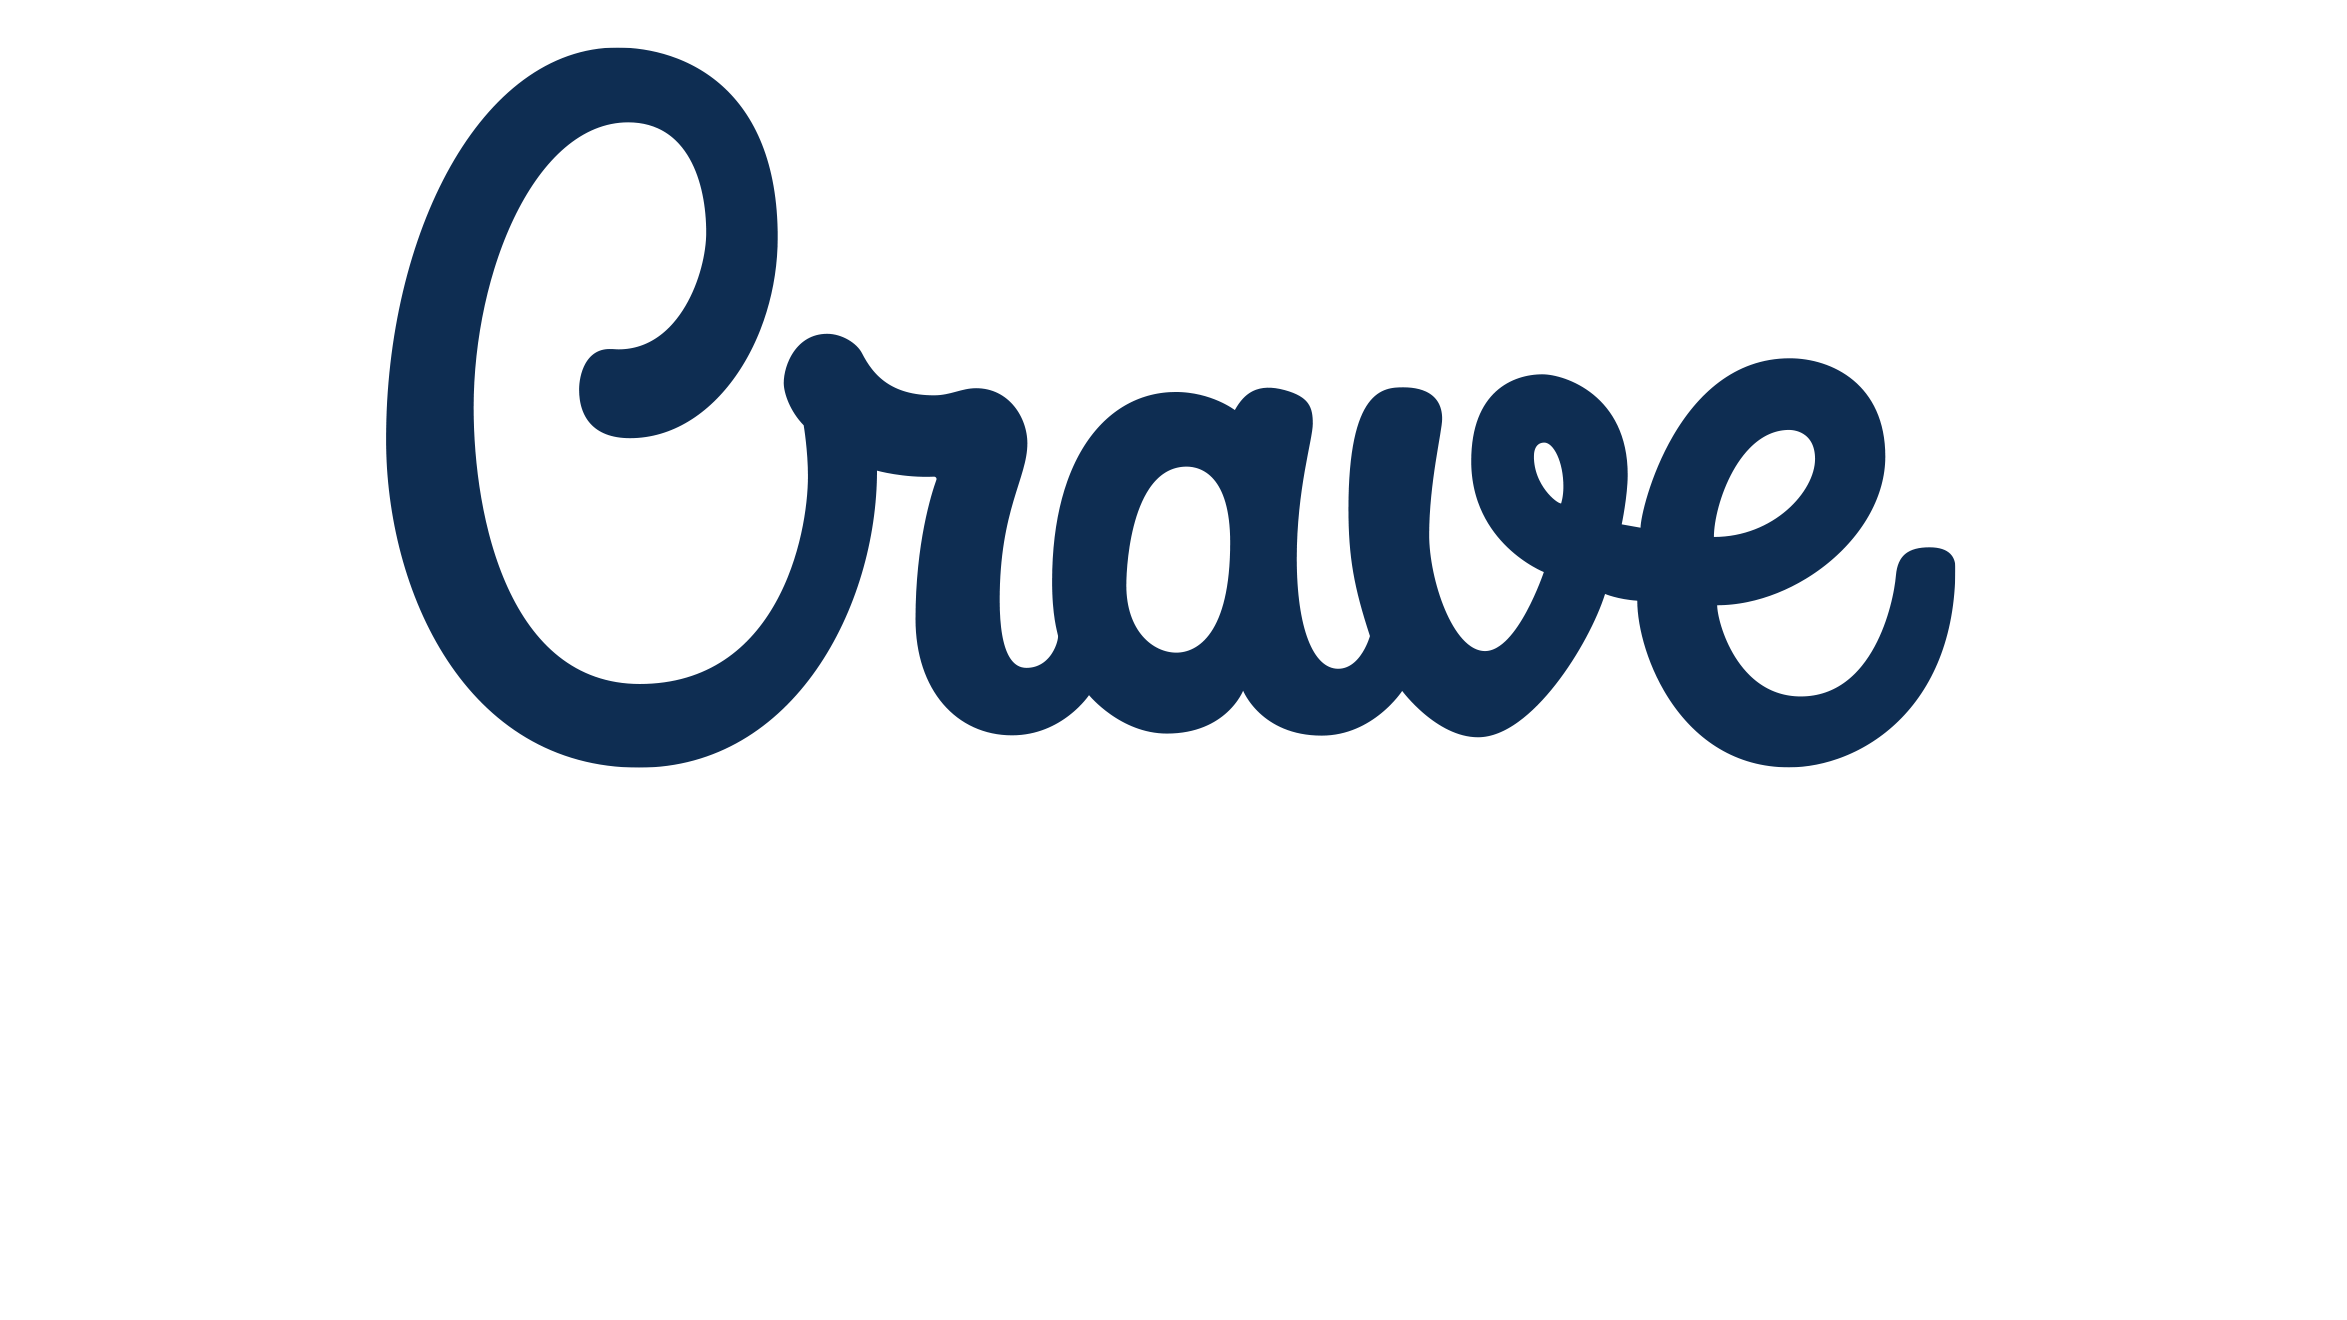 Crave Cupcakes logo